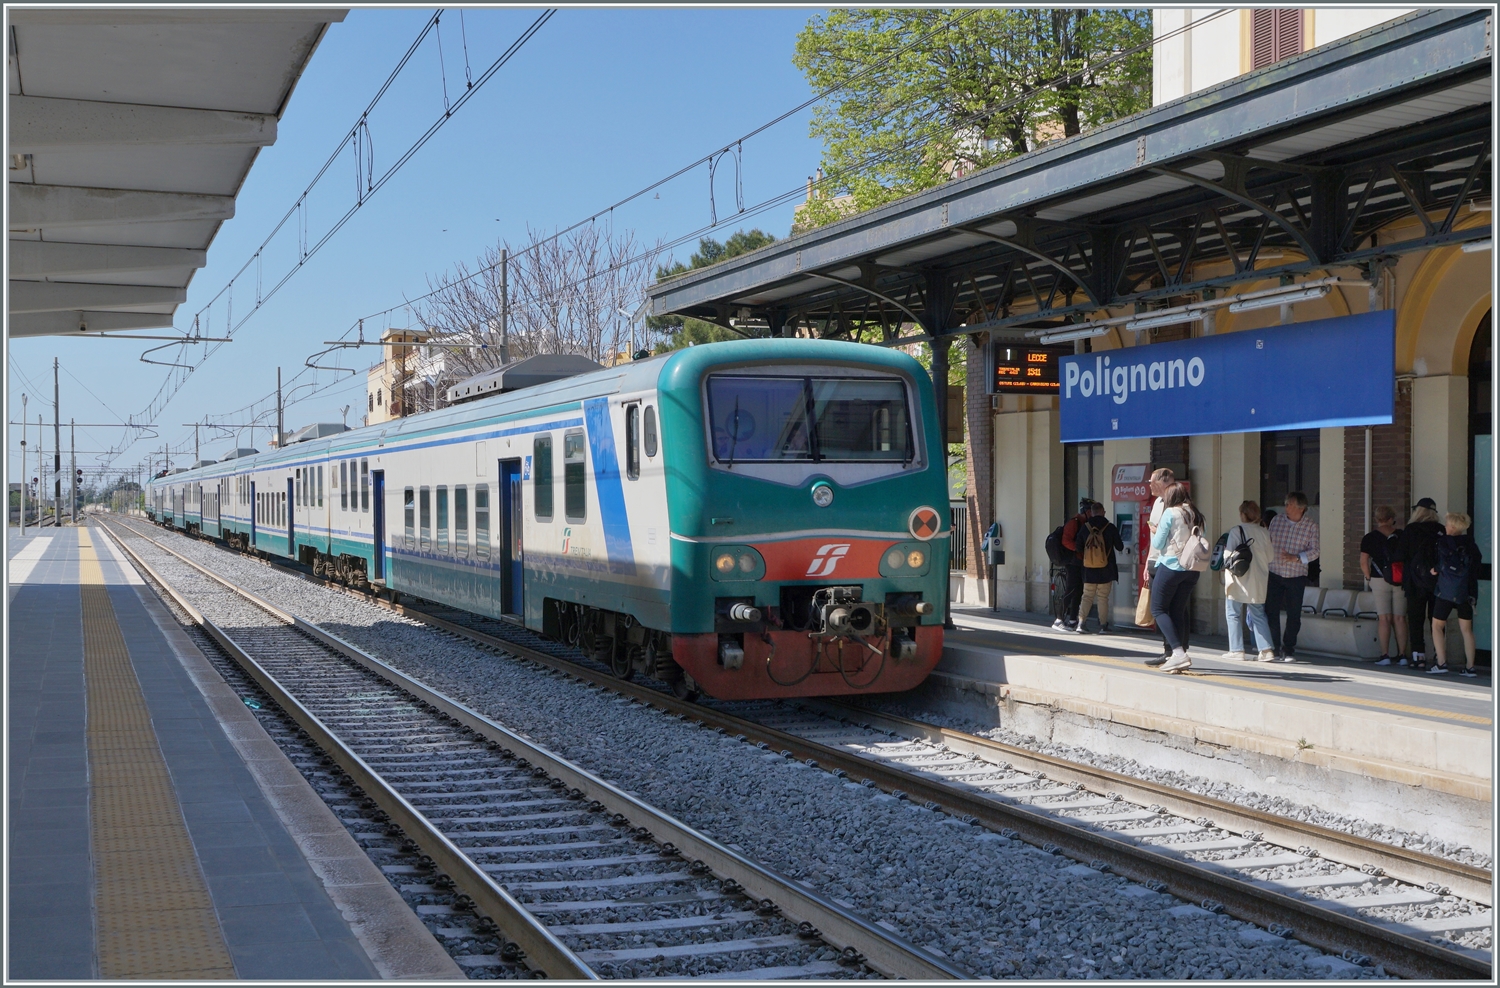 Der FS Trenitalia Regionalzug 4413 von Bari nach Lecce erreicht Polignano A Mare. Trotz der vielen neuen Fahrzeuge sind hin und wieder weiterhin lter Zge im Einsatz, wo wie dieser FS Tpy 73 Niederflurzug (Carrozza vicinale a piano ribassato) in XMPR Lackierung mit einem npBD an der Spitze und vier nB Wagen sowie der schiebenden FS Trenitalia E 464 123. 

22. April 2023